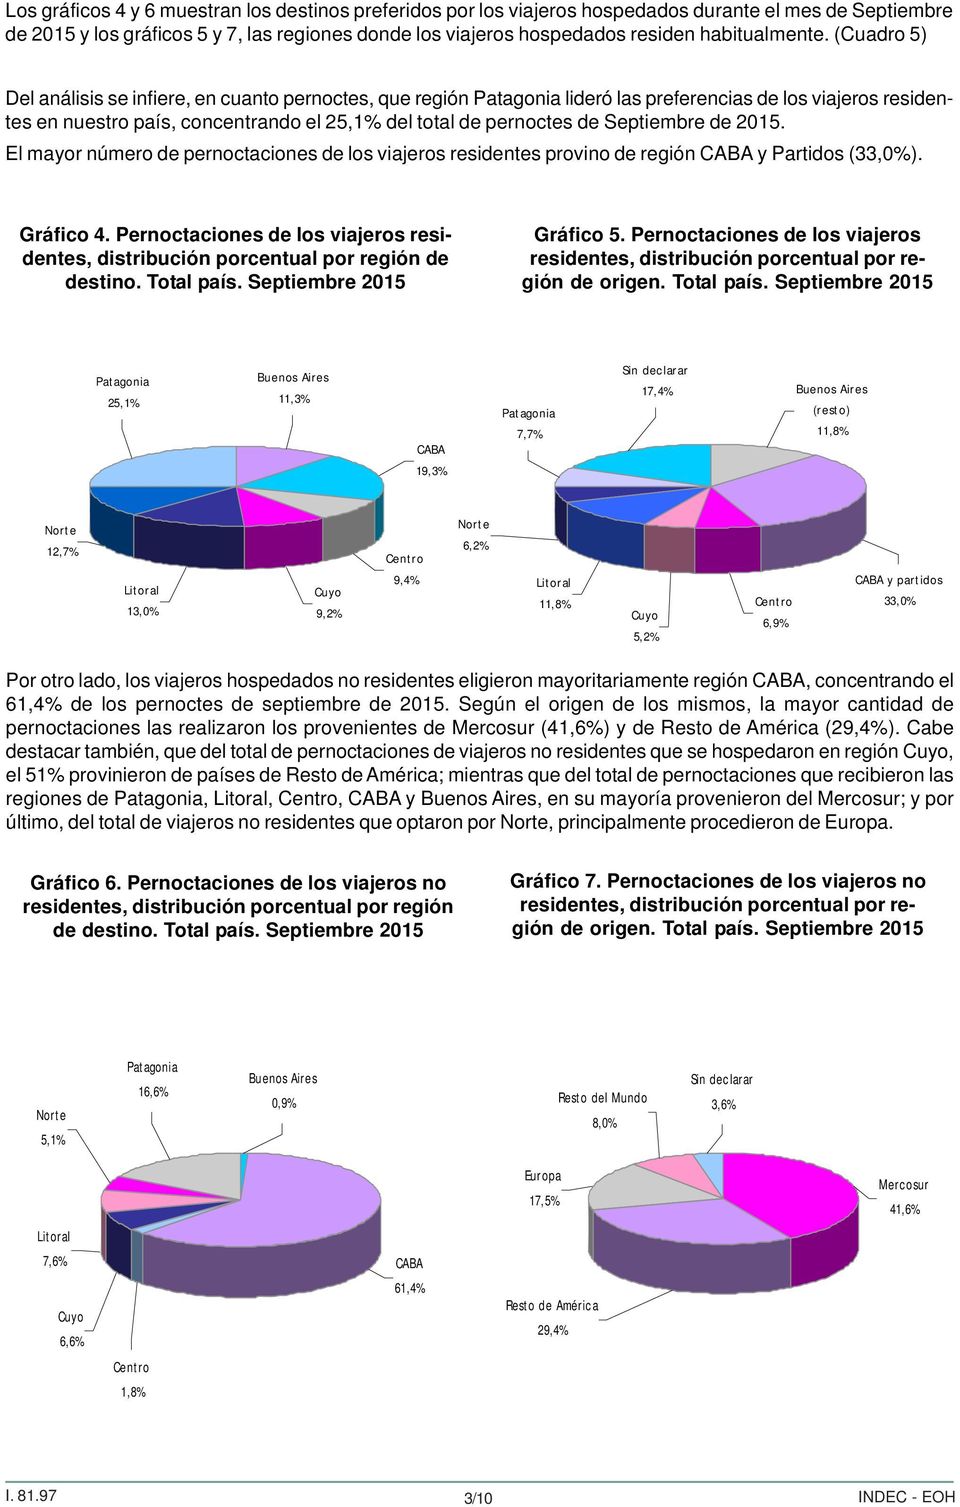 (Cuadro 5) Del análisis se infiere, en cuanto pernoctes, que región Patagonia lideró las preferencias de los viajeros residentes en nuestro país, concentrando el 25,1% del total de pernoctes de